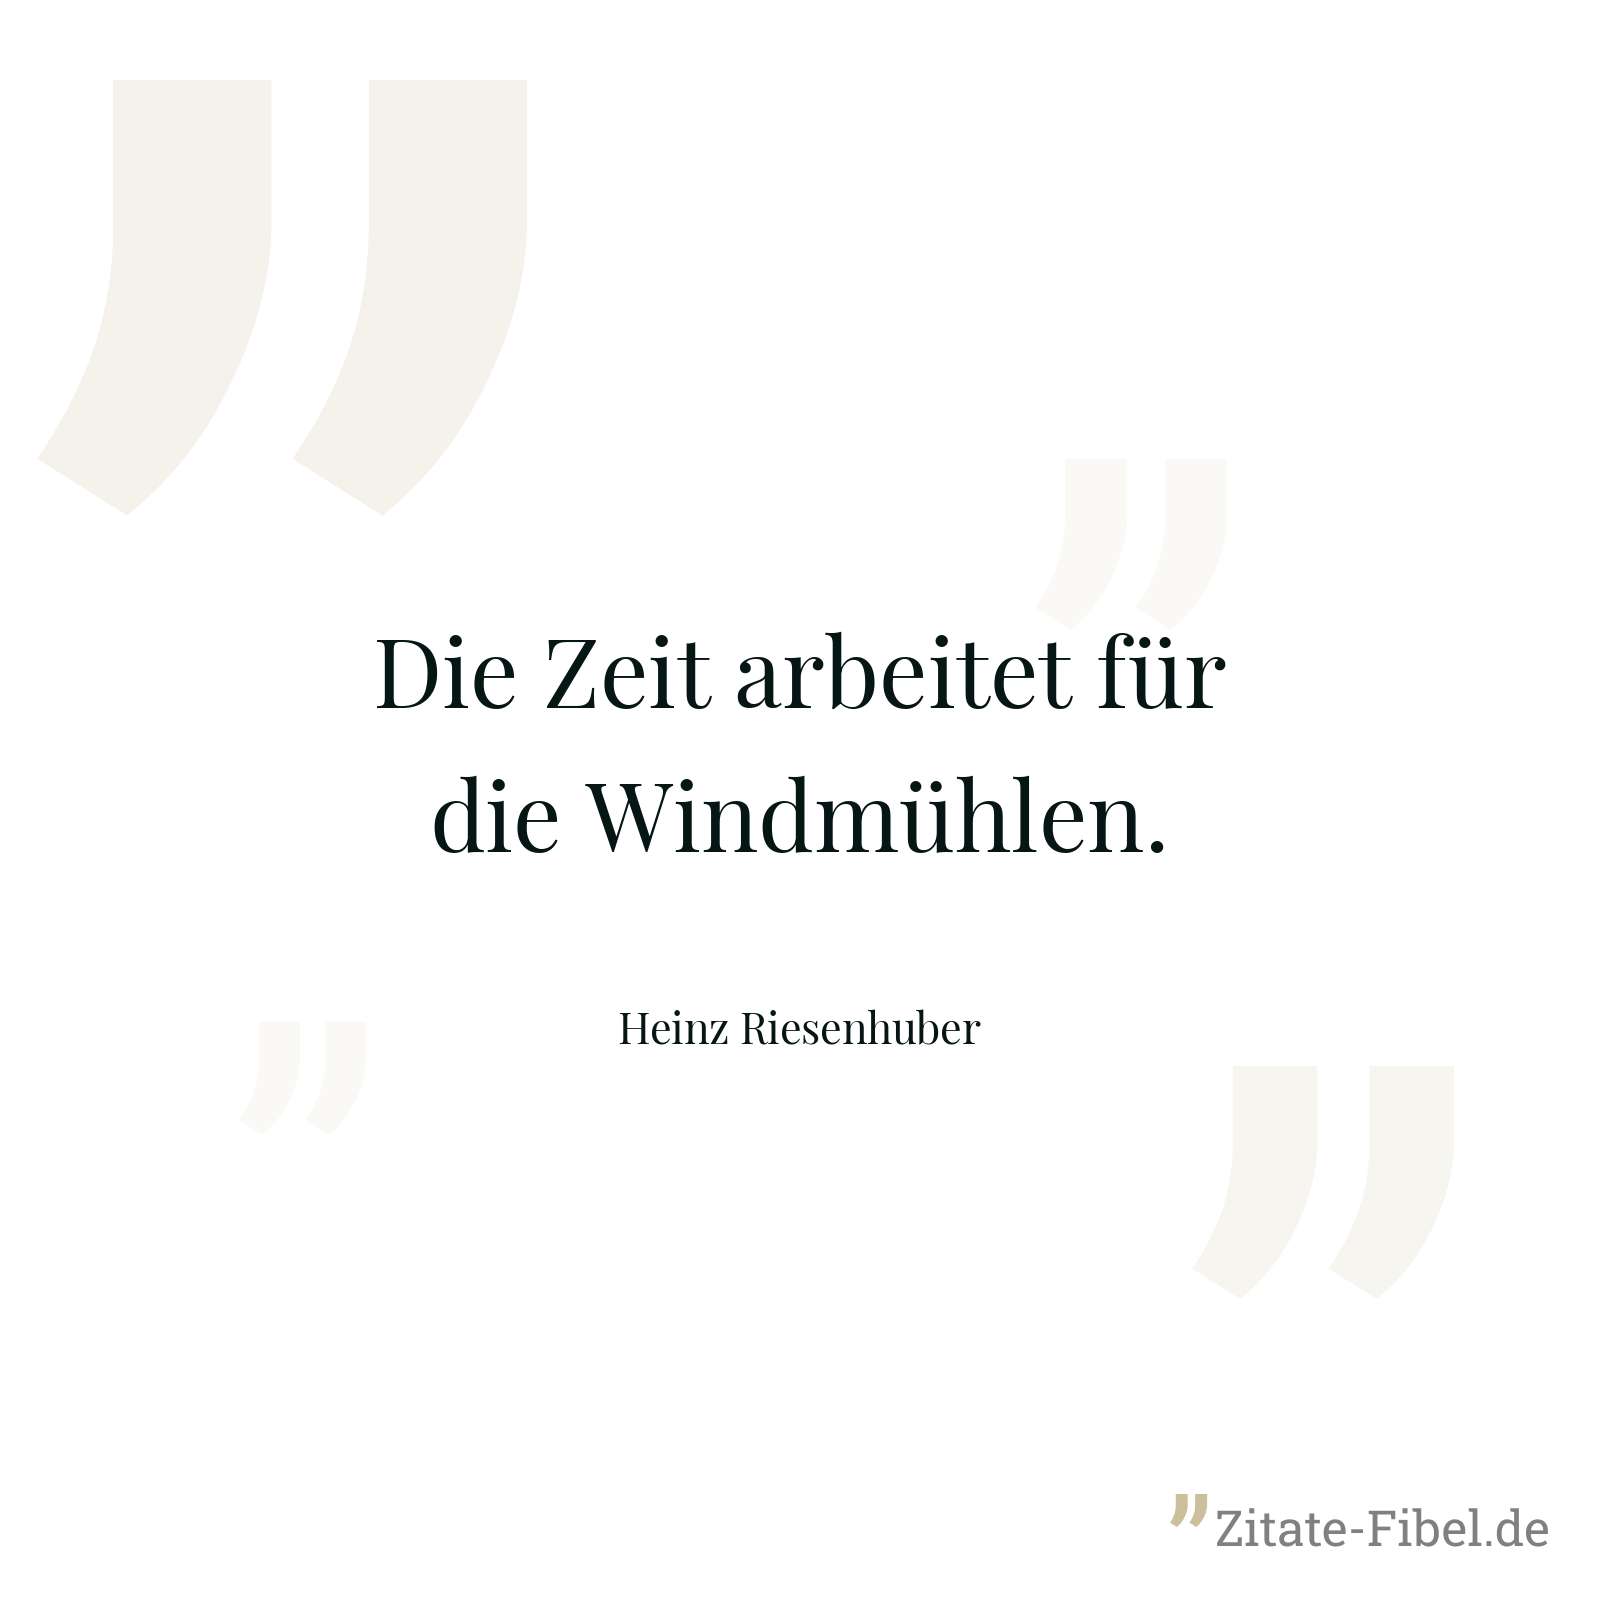 Die Zeit arbeitet für die Windmühlen. - Heinz Riesenhuber